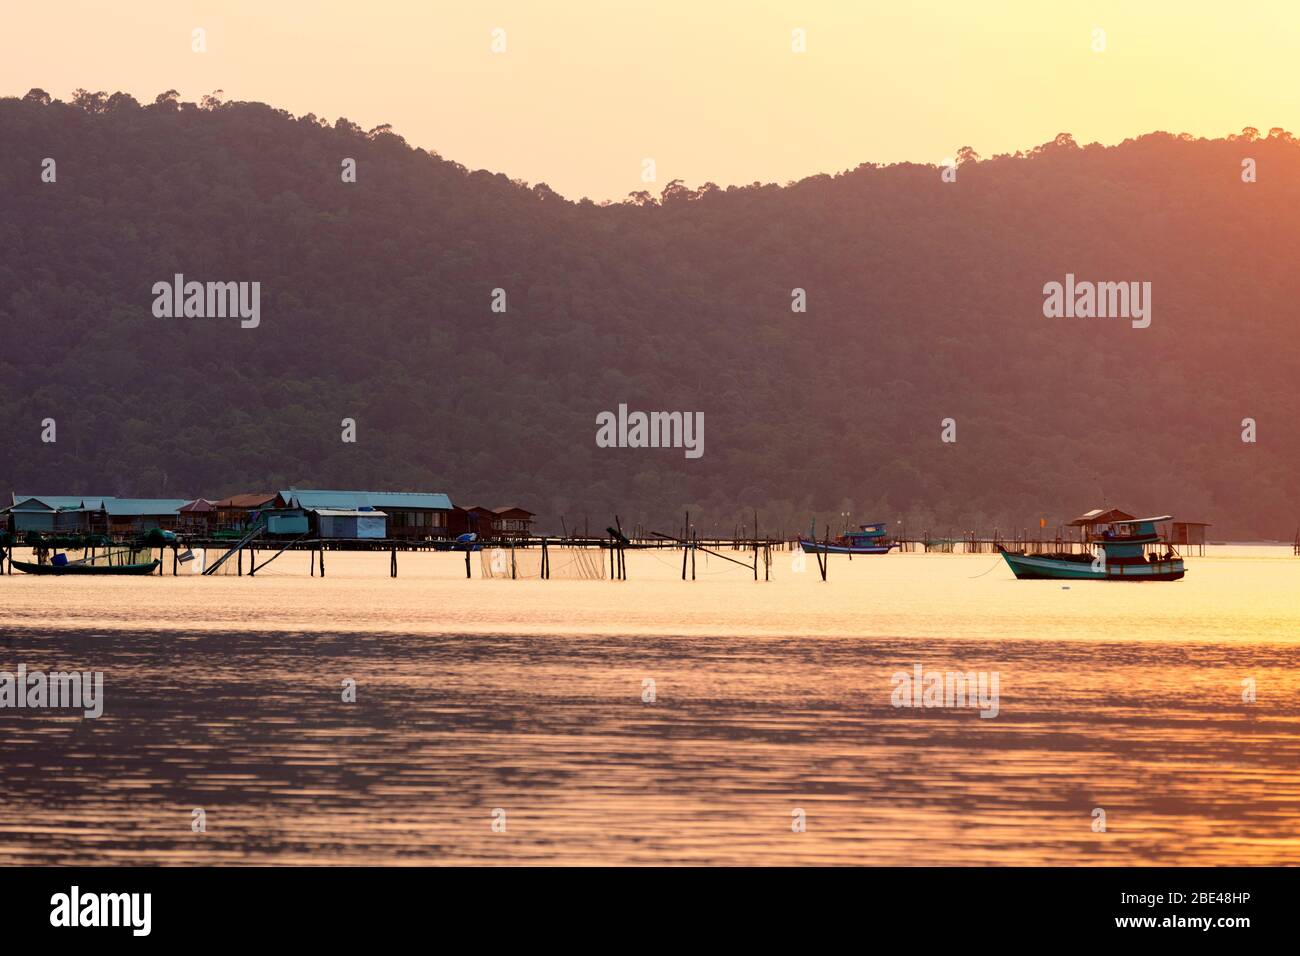 Boote und Gebäude auf dem Wasser während eines glühenden rosa Sonnenuntergang, Starfish Beach; Phu Quoc, Kien Giang Provinz, Vietnam Stockfoto